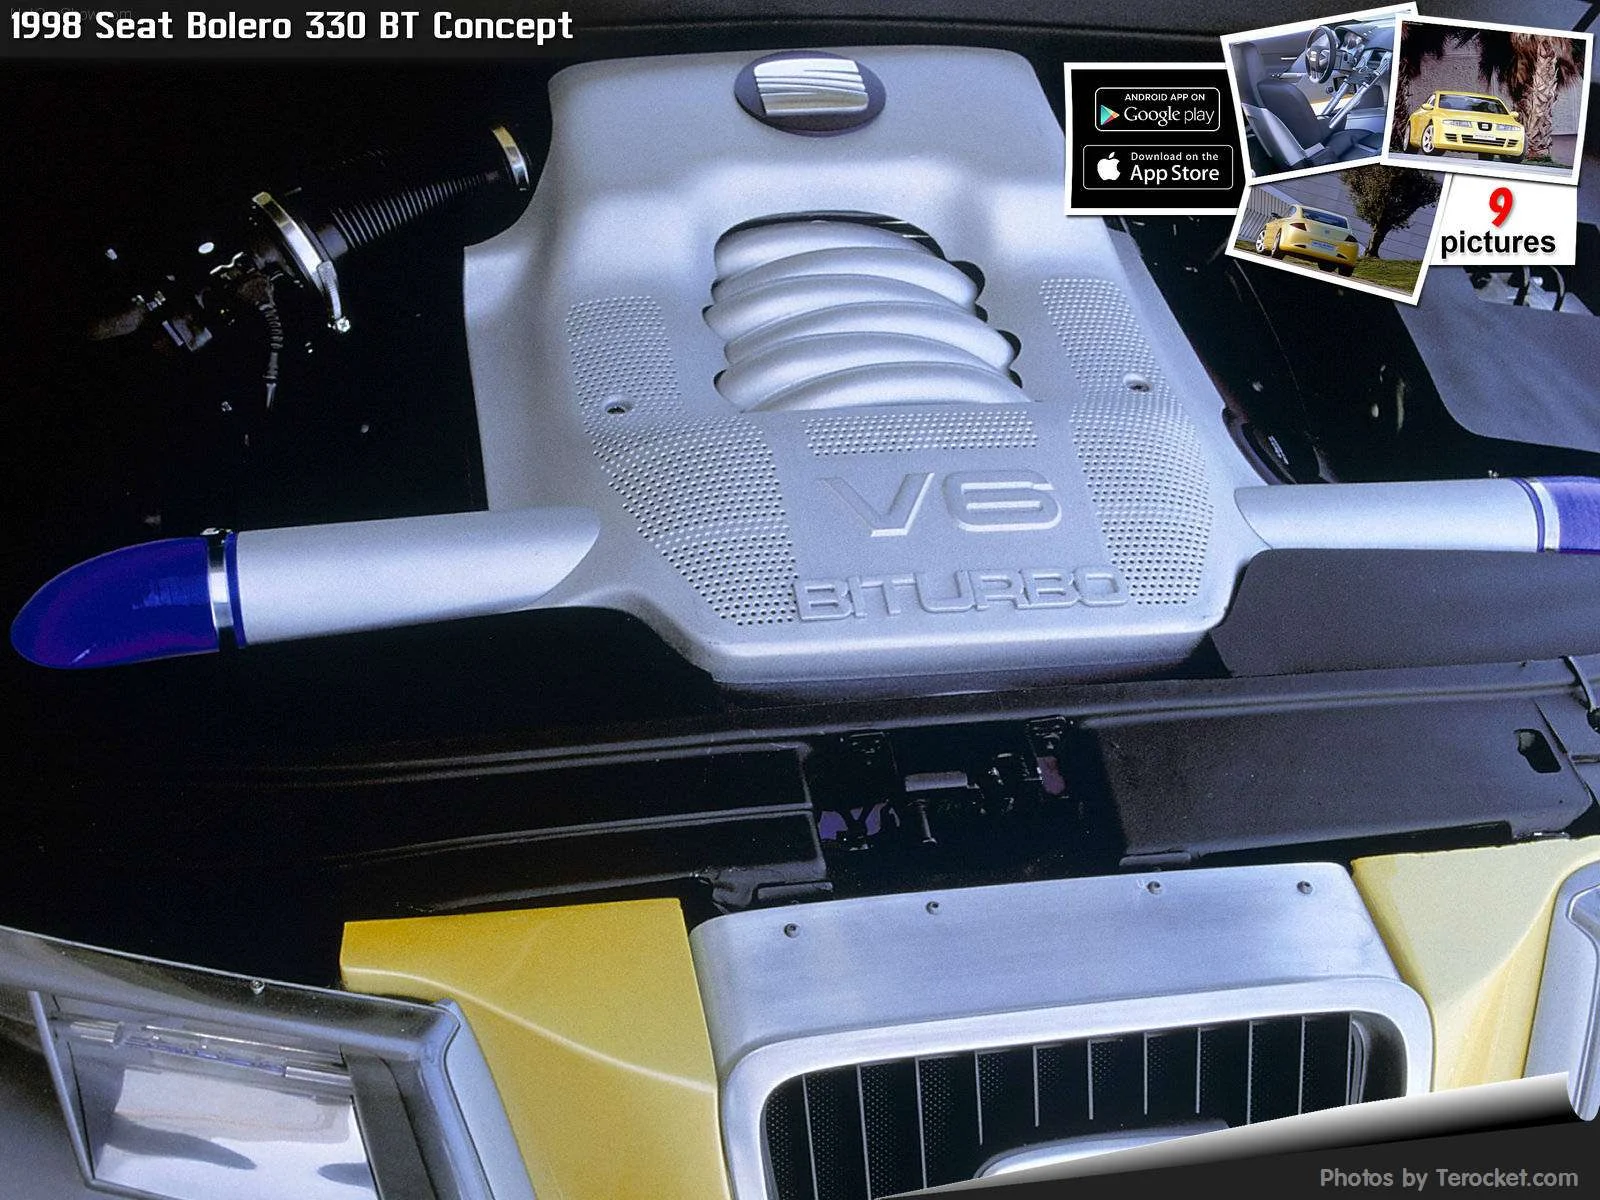 Hình ảnh xe ô tô Seat Bolero 330 BT Concept 1998 & nội ngoại thất